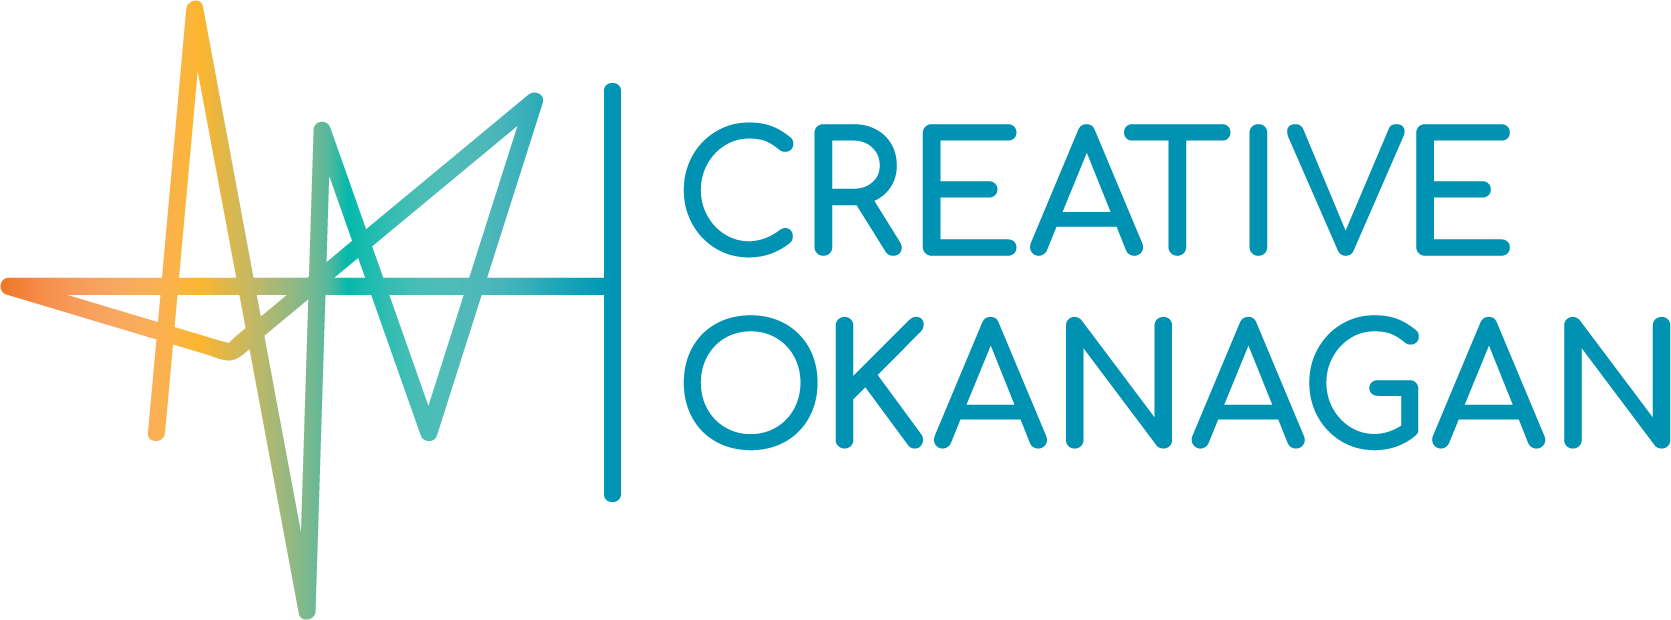 CreativeOkanagan-Logo-Color.png